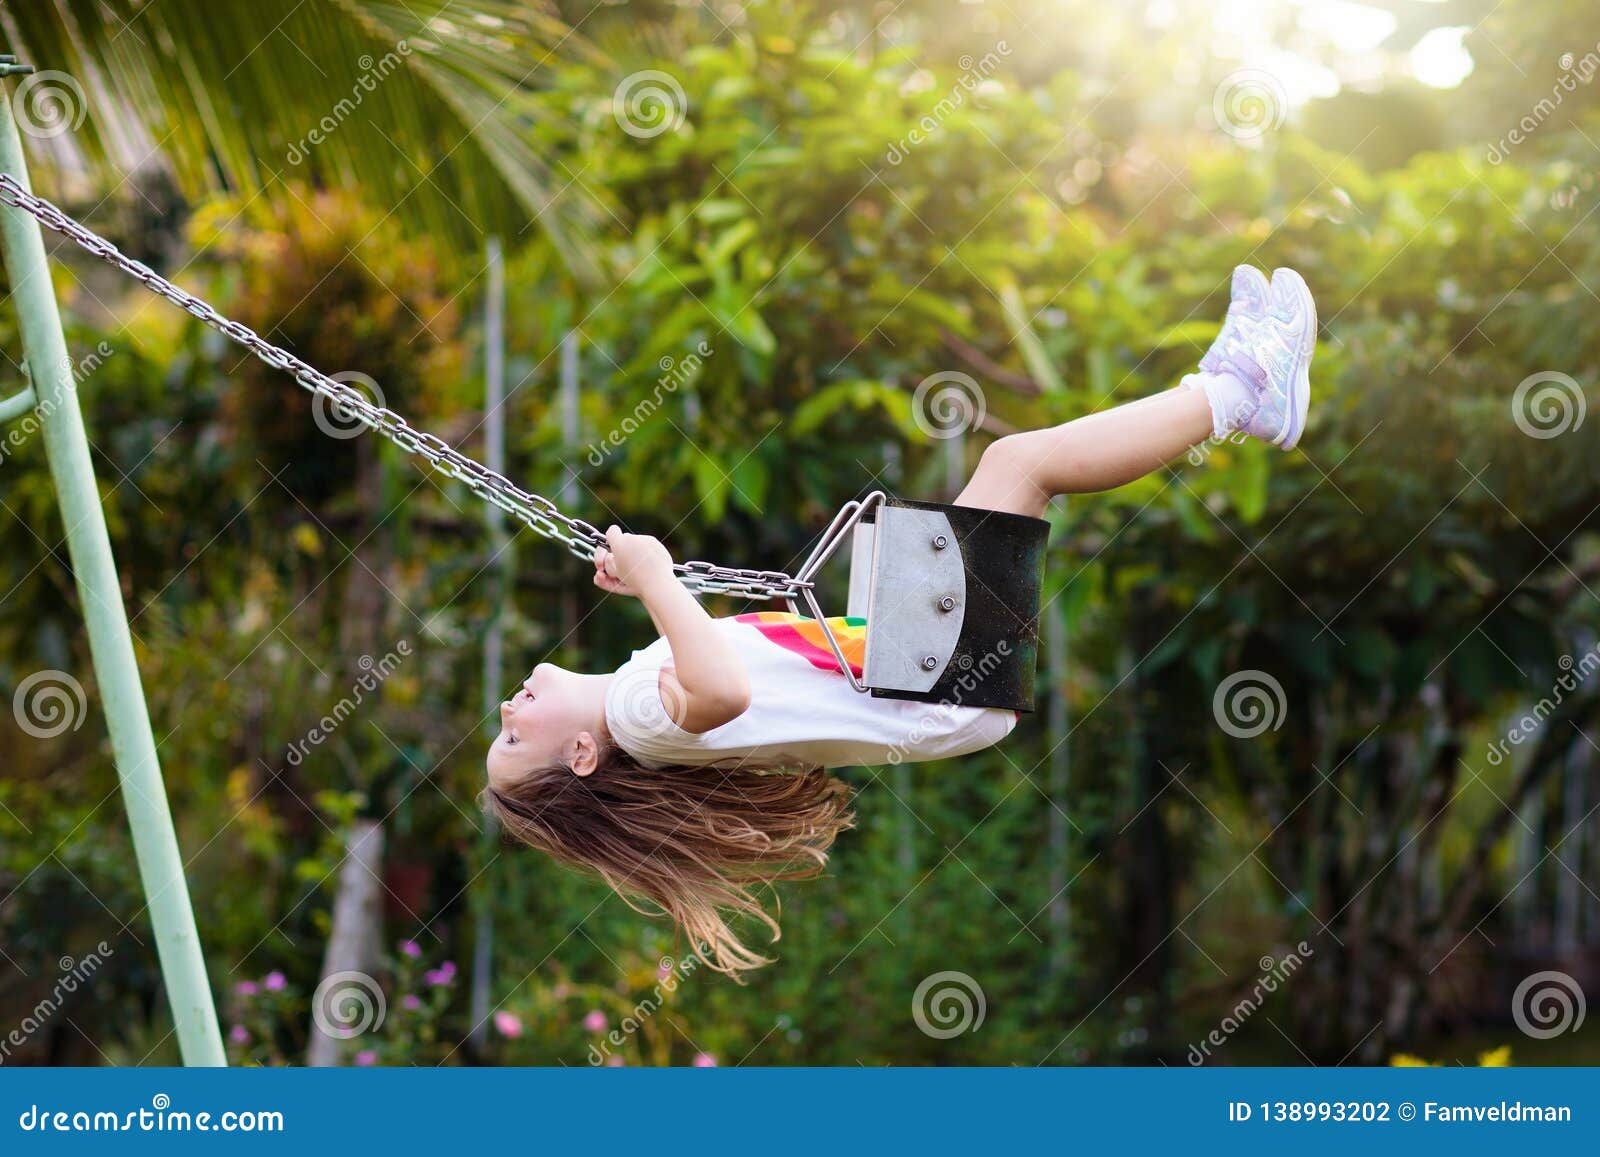 Child Swinging on Pla photo